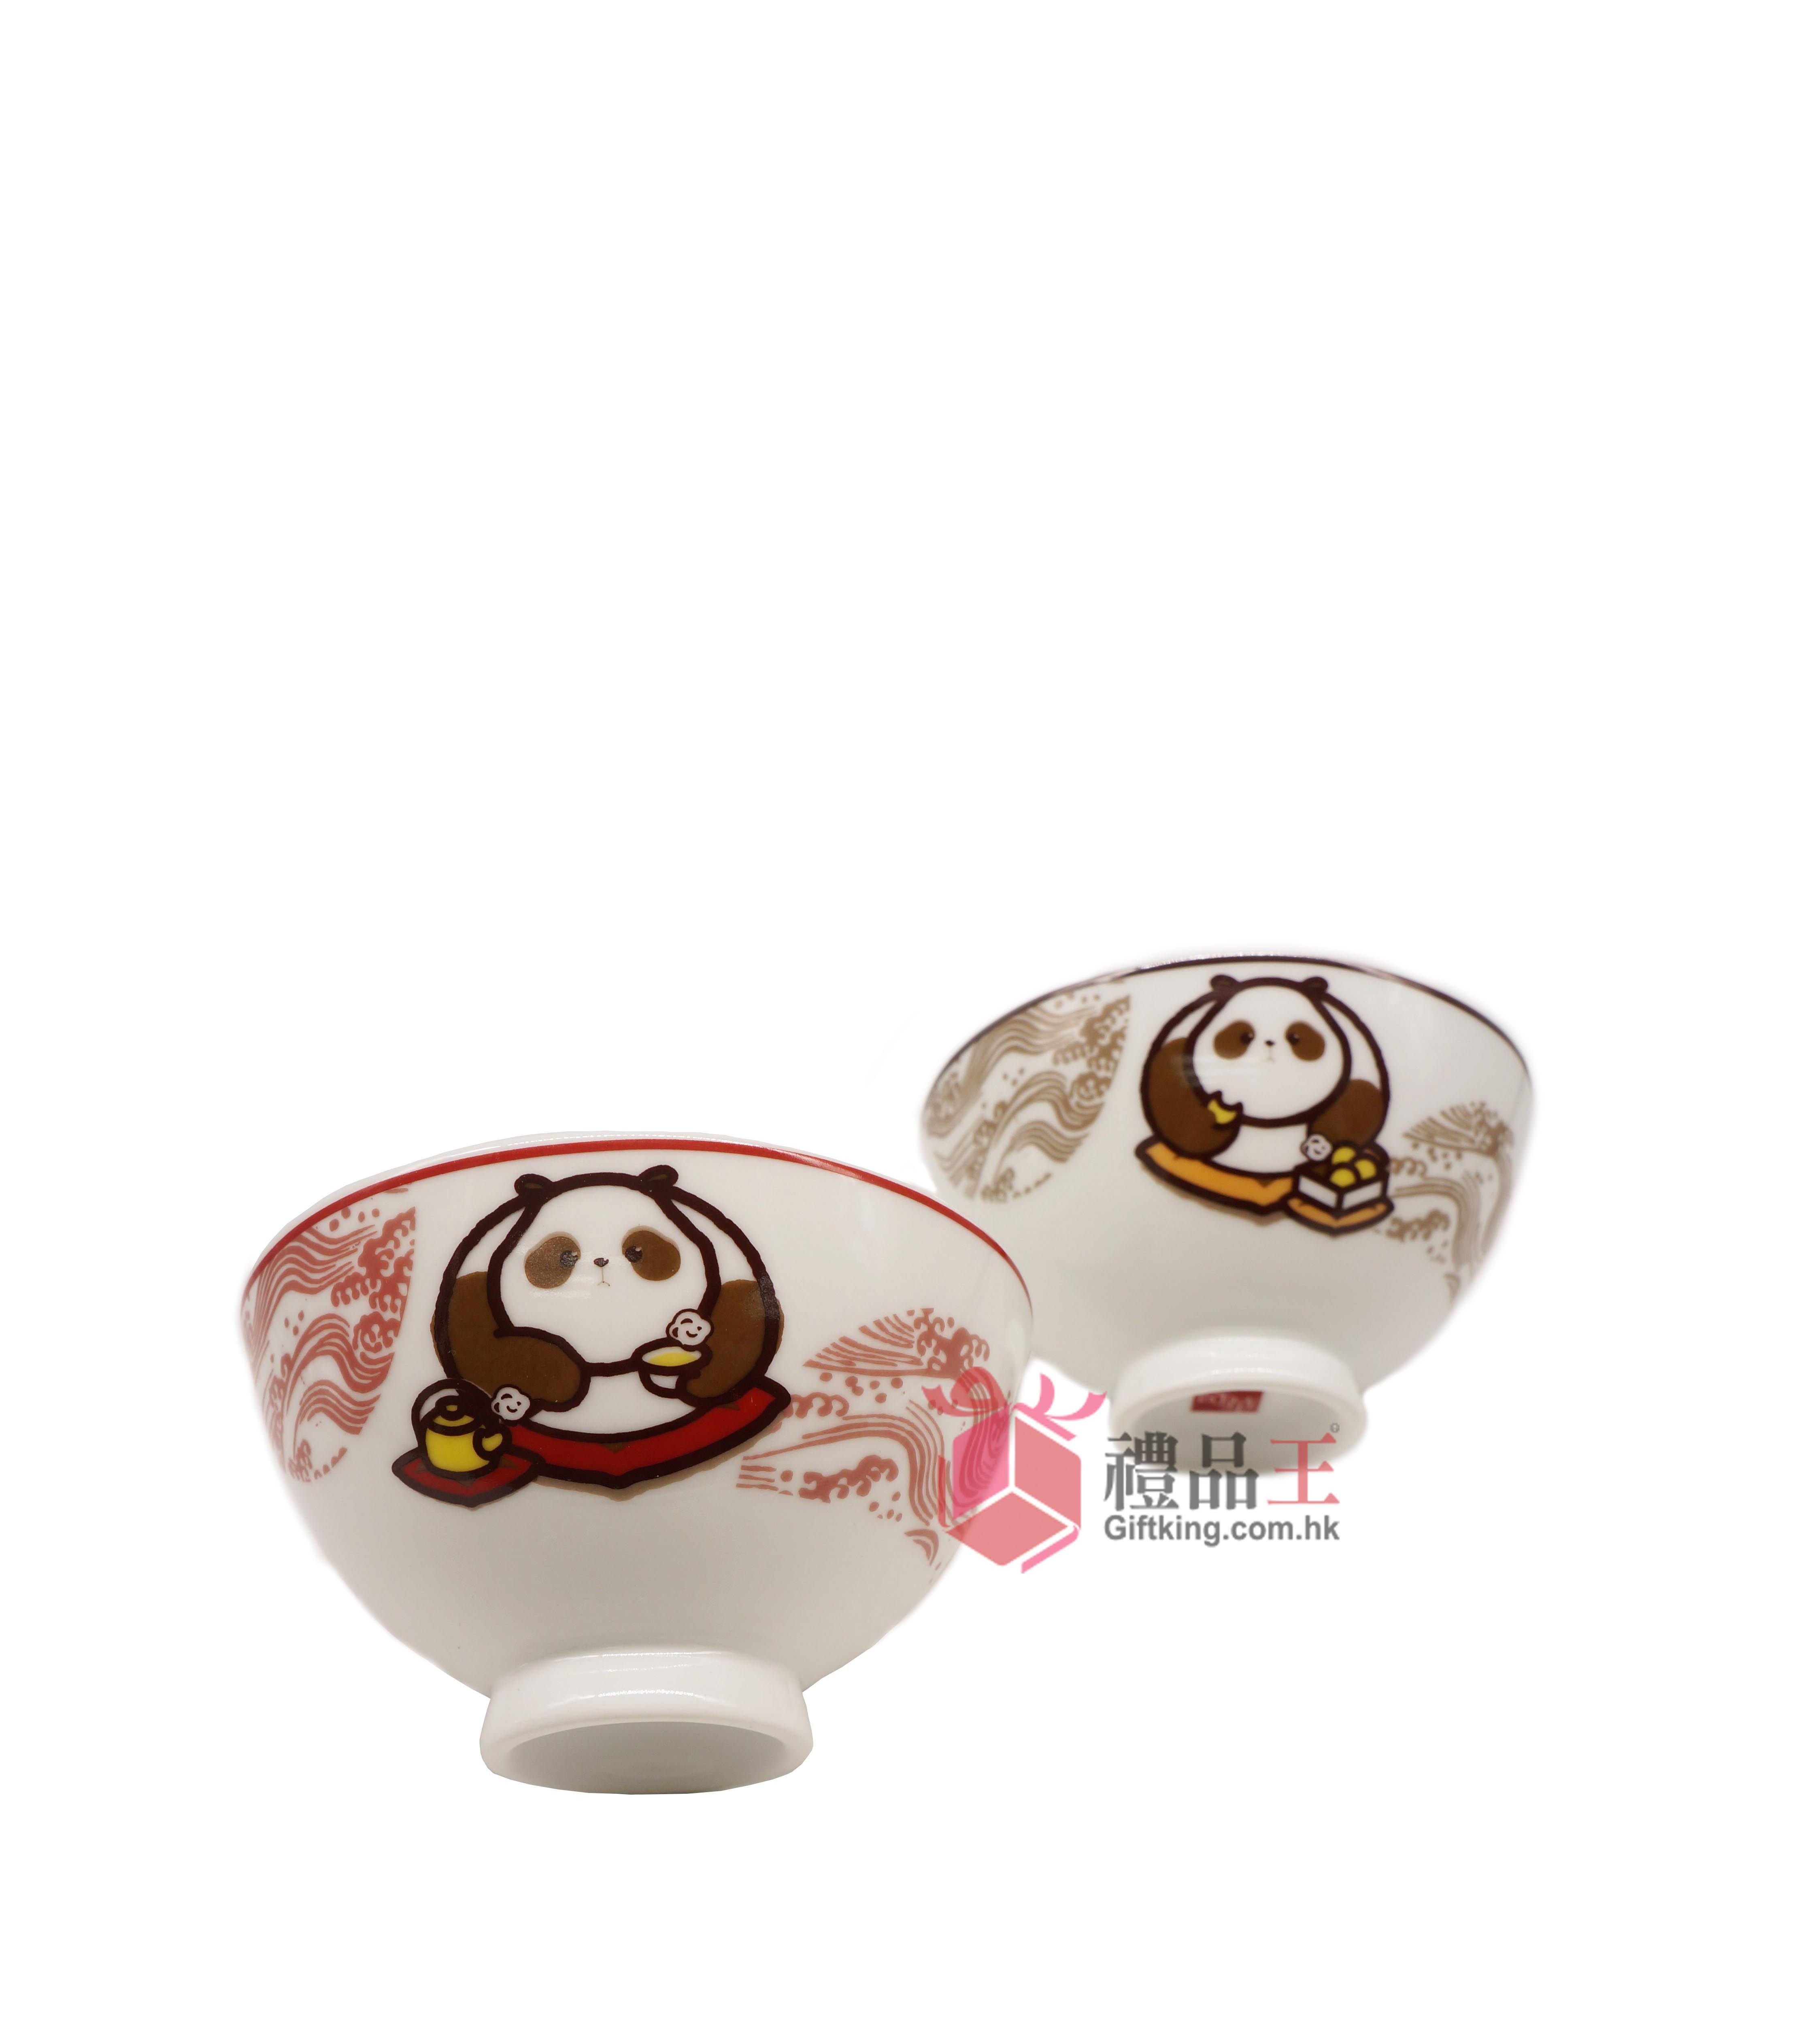 Kee Wah Bakery Panda Designed Ceramic Bowl (Homeware Gift)